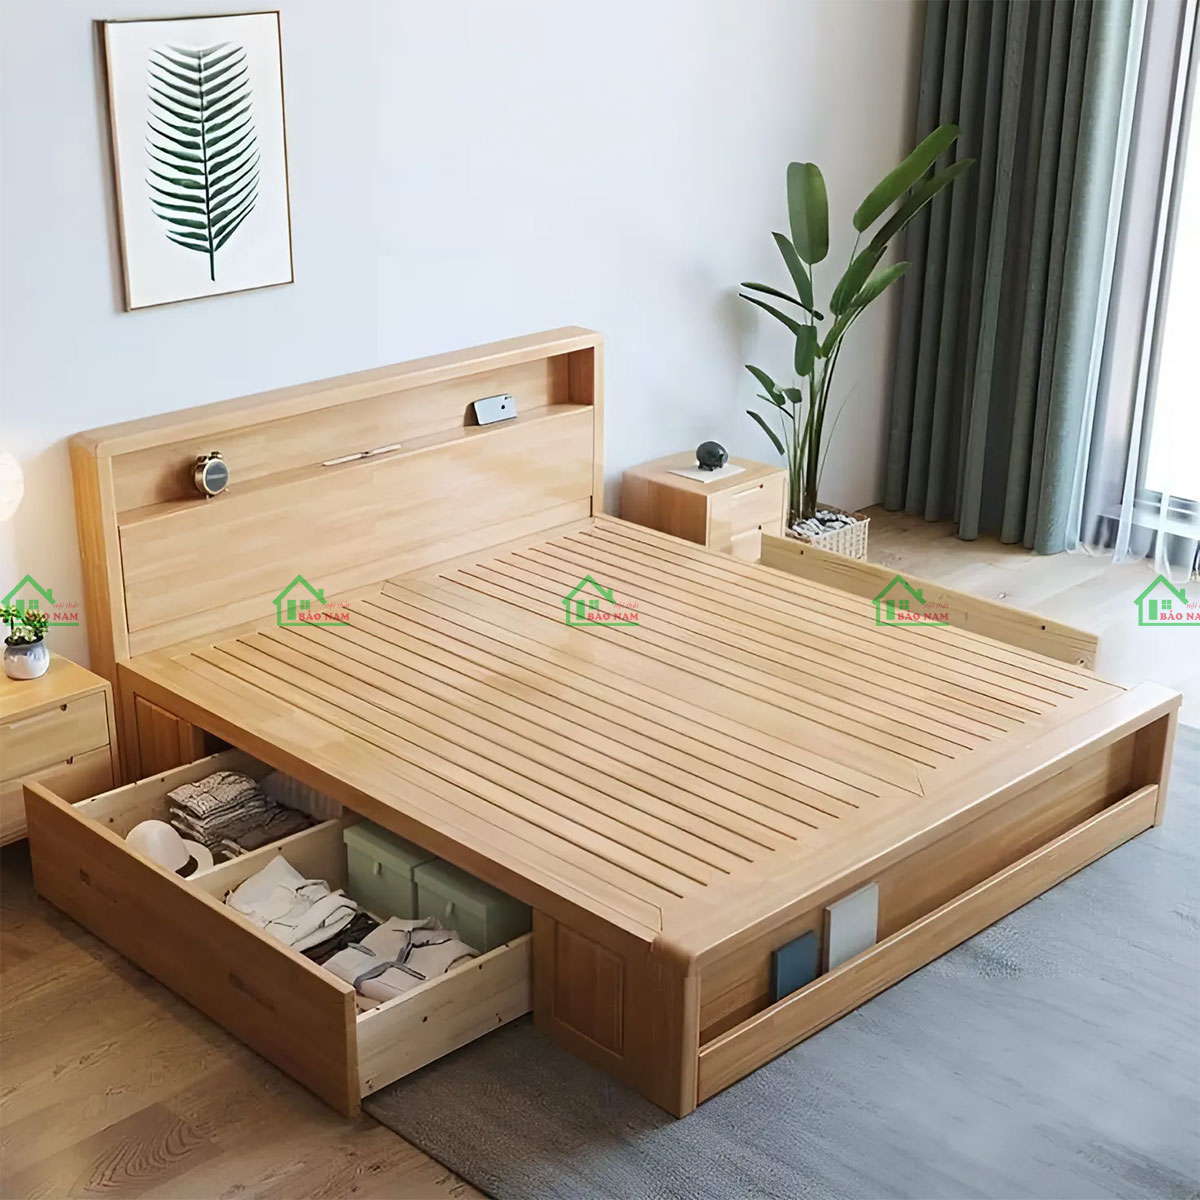 Giường hộp gỗ tự nhiên có ngăn kéo tiện ích